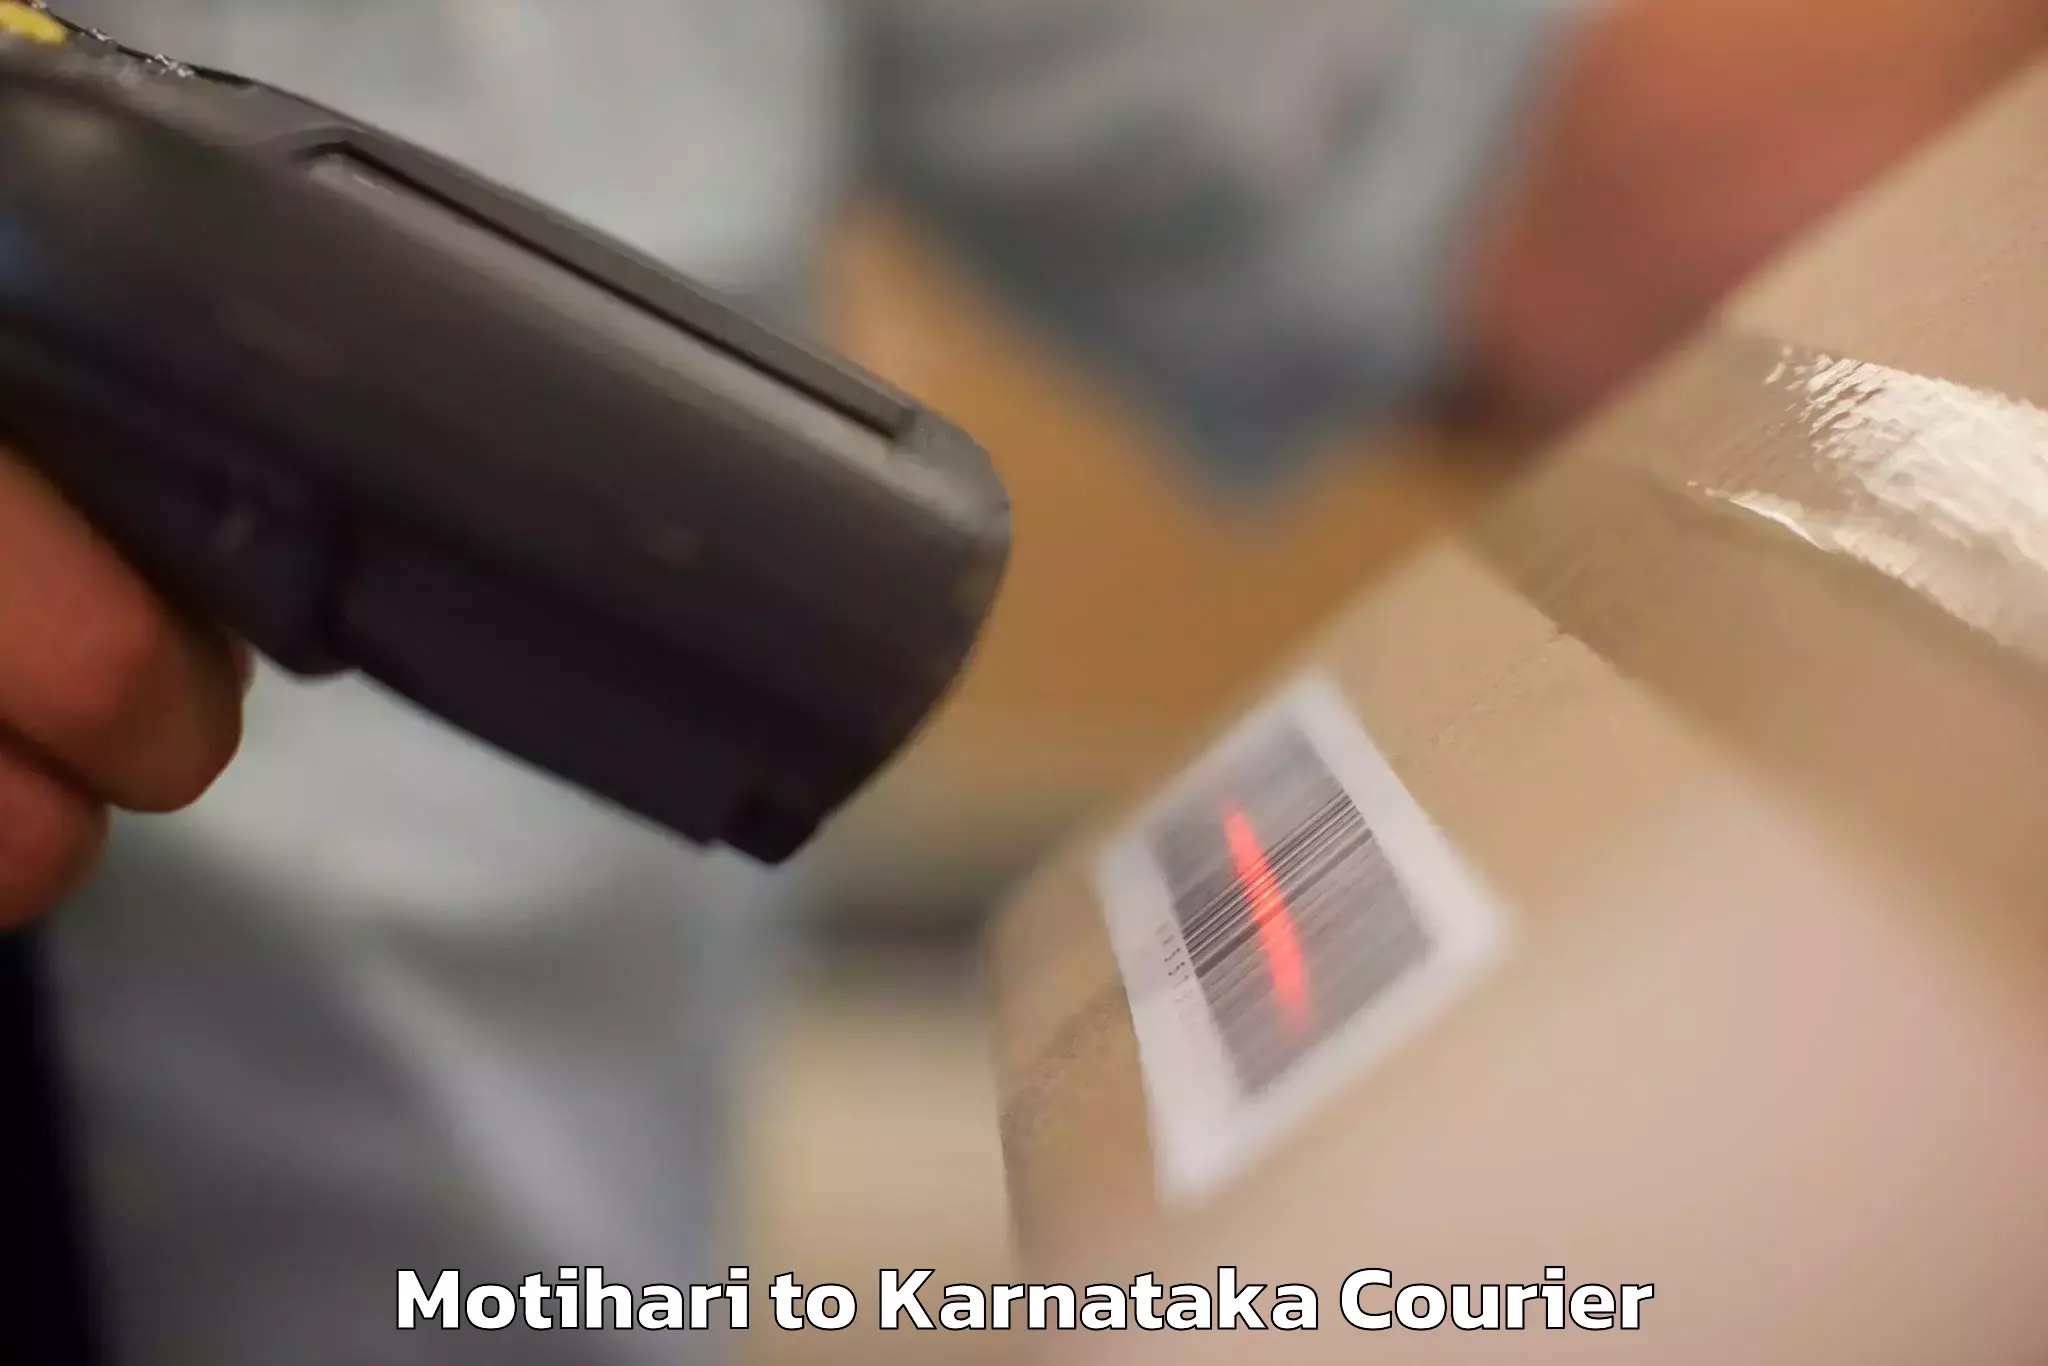 Door-to-door baggage service Motihari to Anavatti